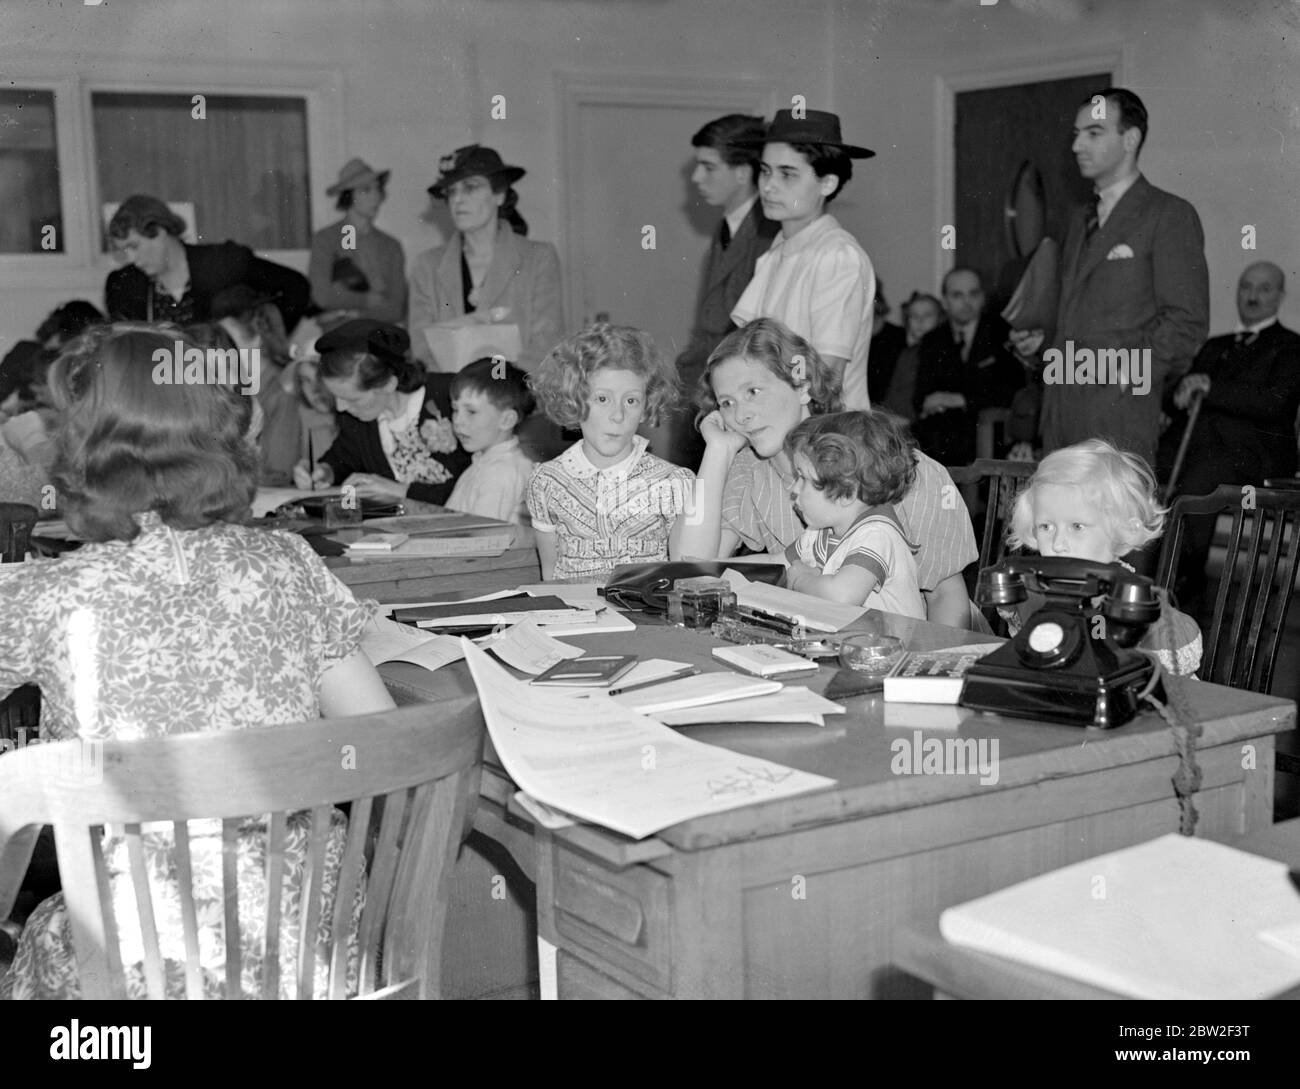 Eine Studie in Ausdrucksformen, während Mütter und ihre Kinder an der amerikanischen Botschaft teilnahmen, um Visa für die Reise in die USA zu beantragen (Kriegszeit Evakuierungsschema, 1940) 26. Juni 1940 Stockfoto